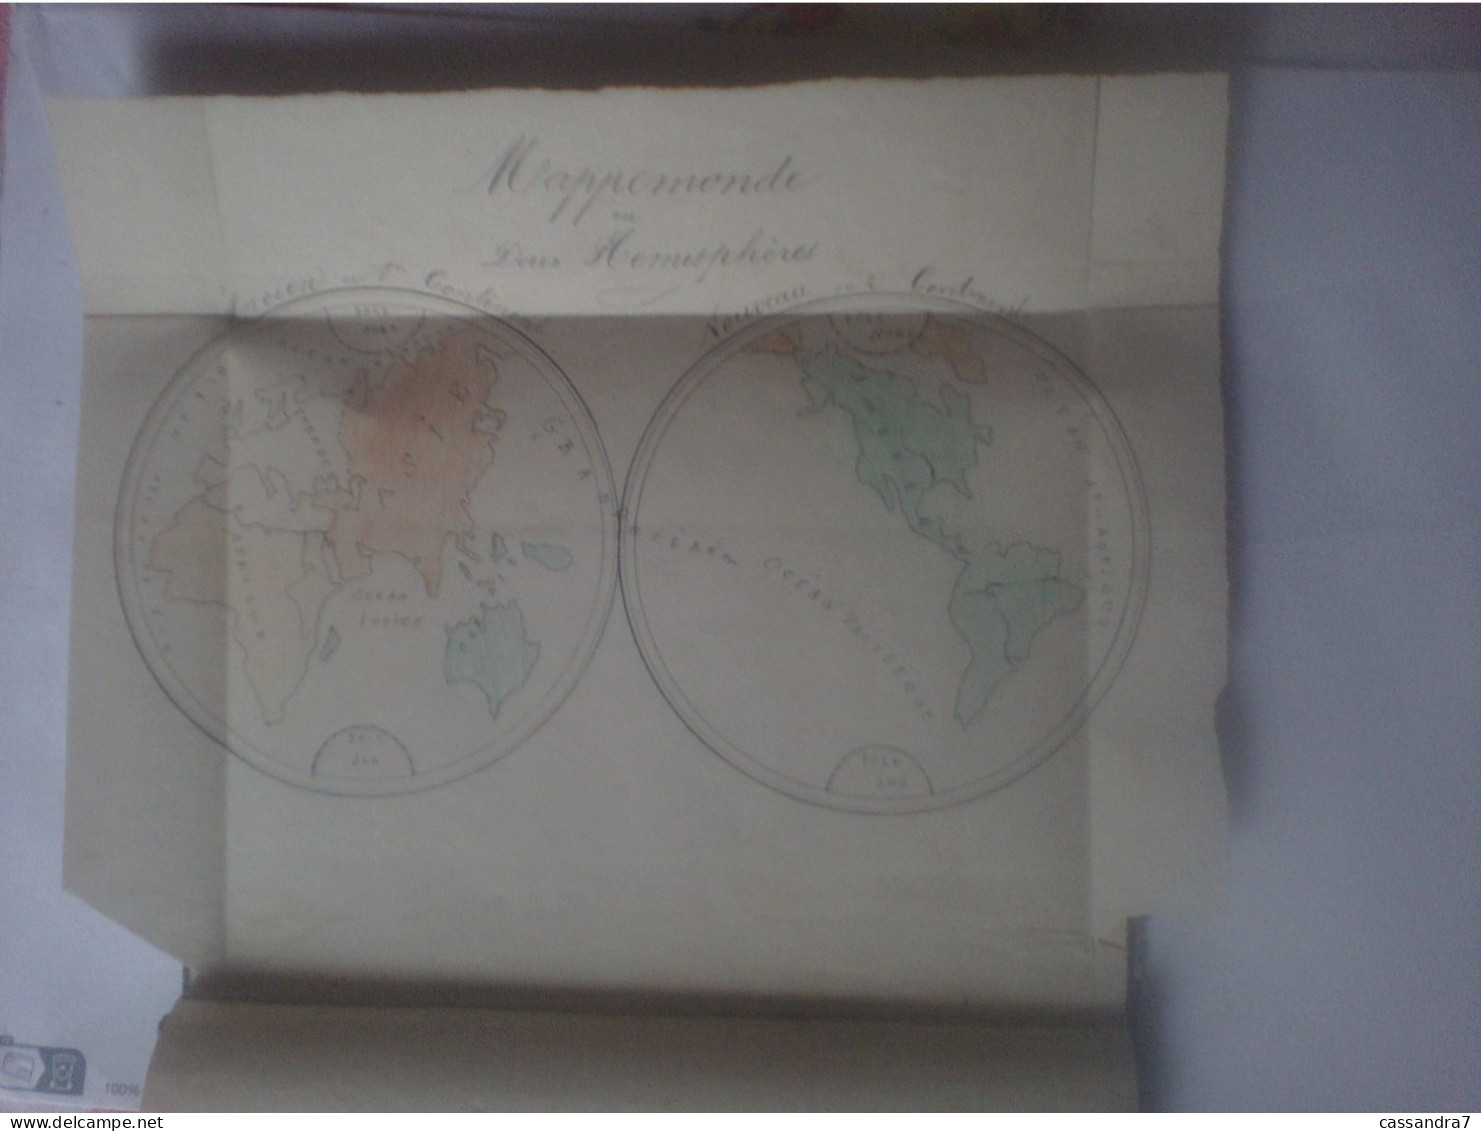 Scolaire - Carnet De Géographie à Lafargue Aramis Acheté Le 8 Décembre 1876 Avec Cartes Et Dessins Manuscrits - Non Classés